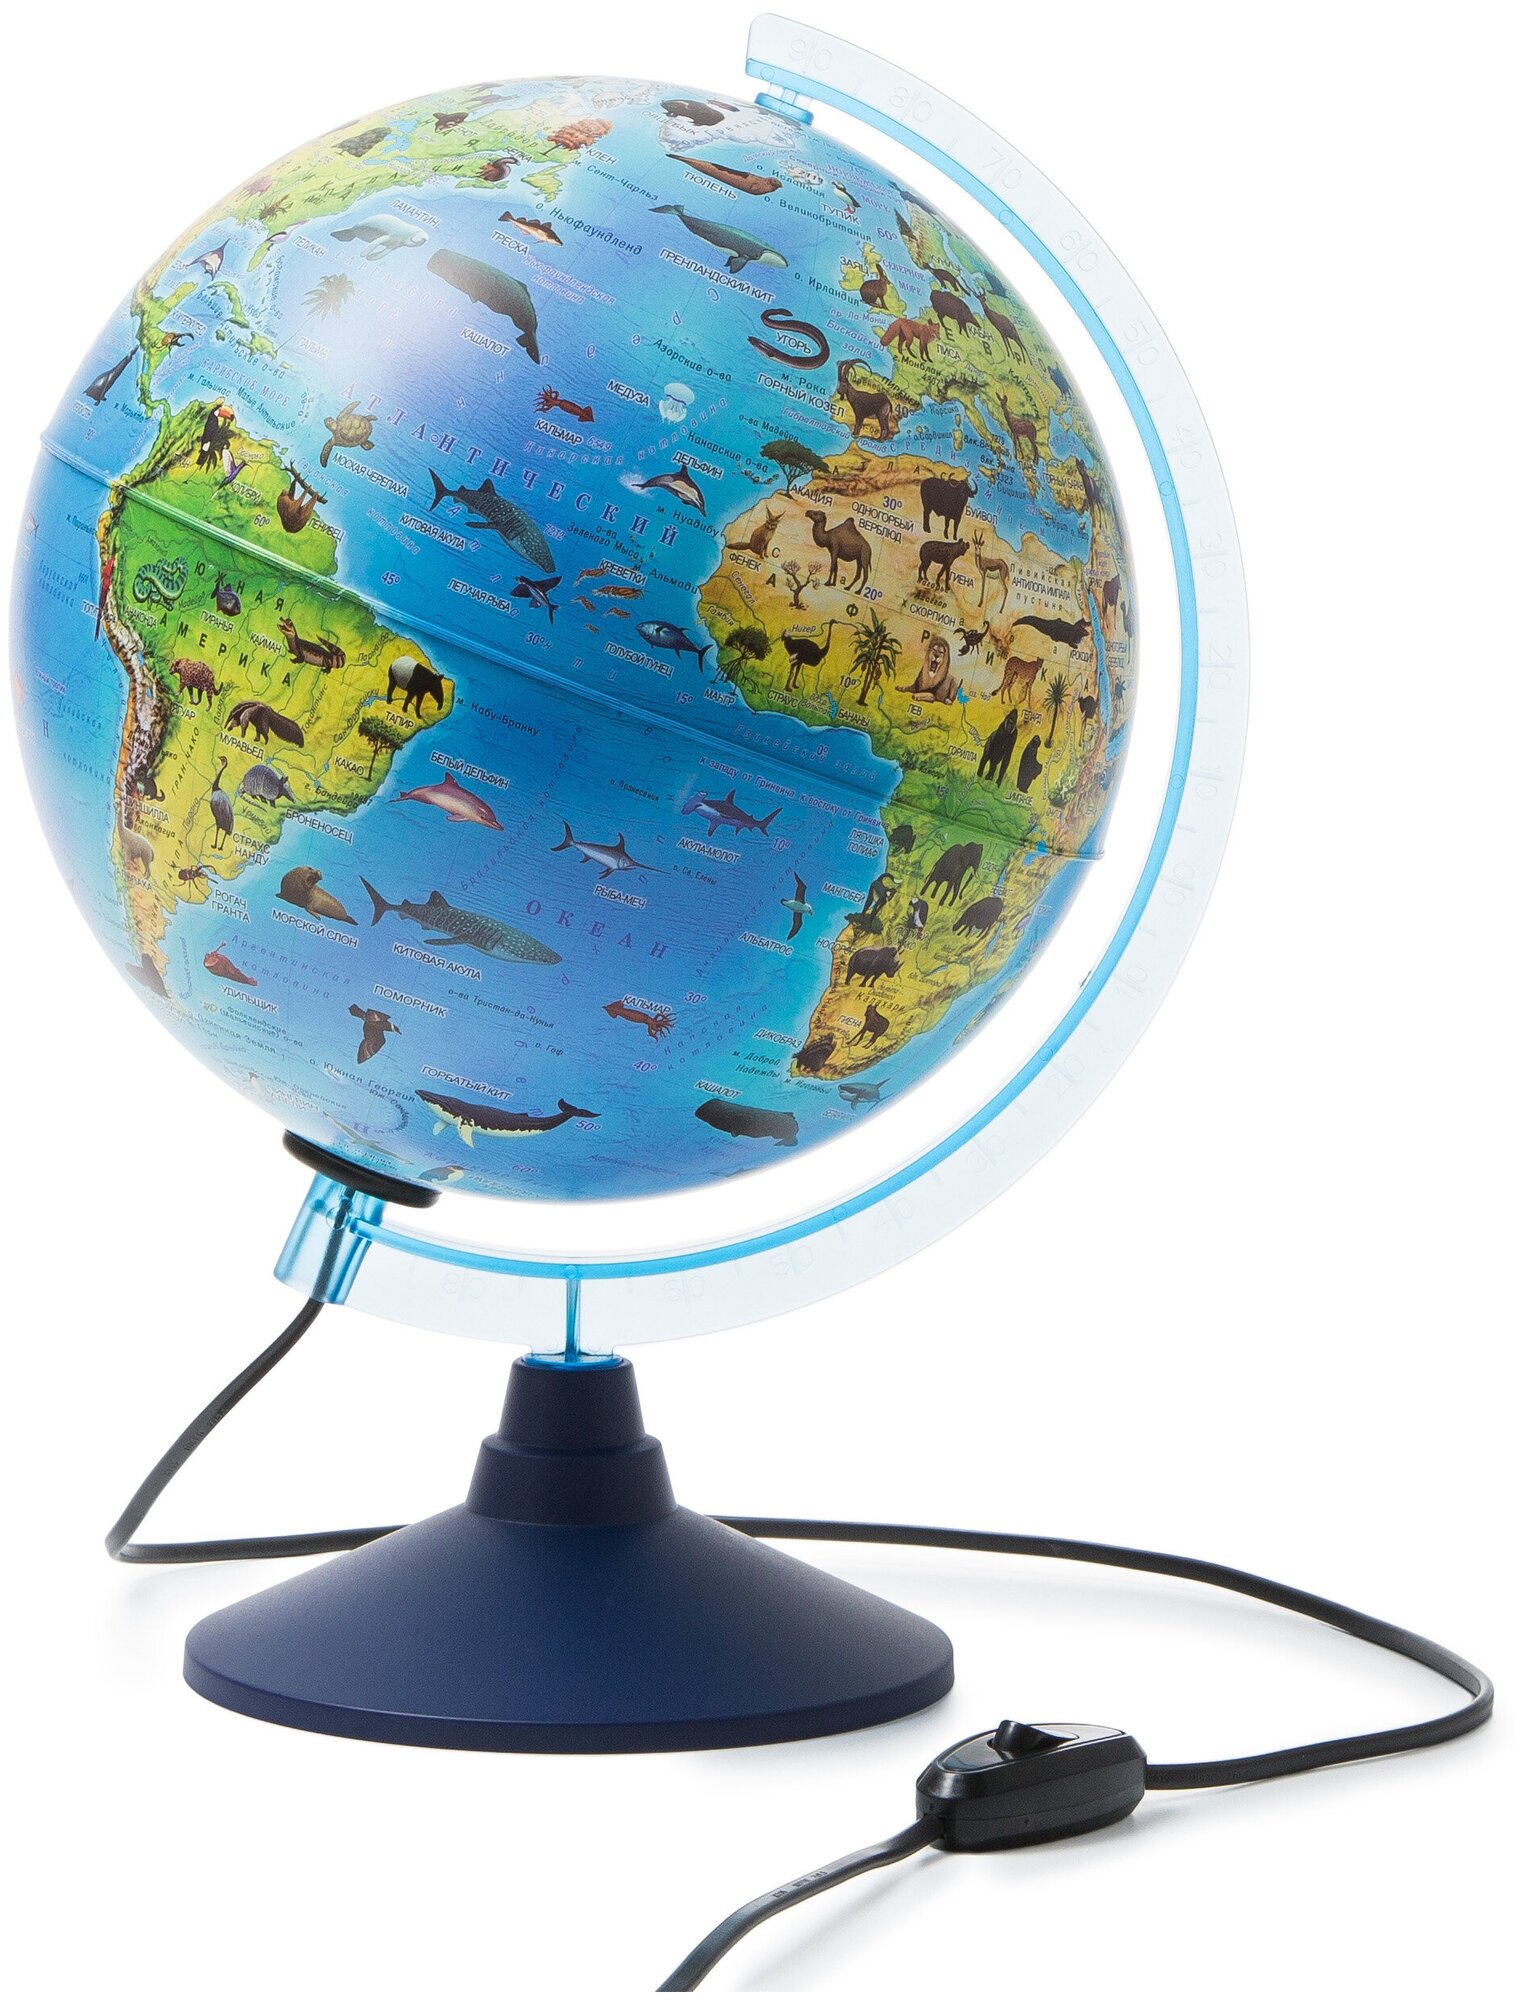 Глобен Интерактивный глобус D- 250 мм Зоогеографический (Детский) с подсветкой. Очки виртуальной реальности (VR) в комплекте.